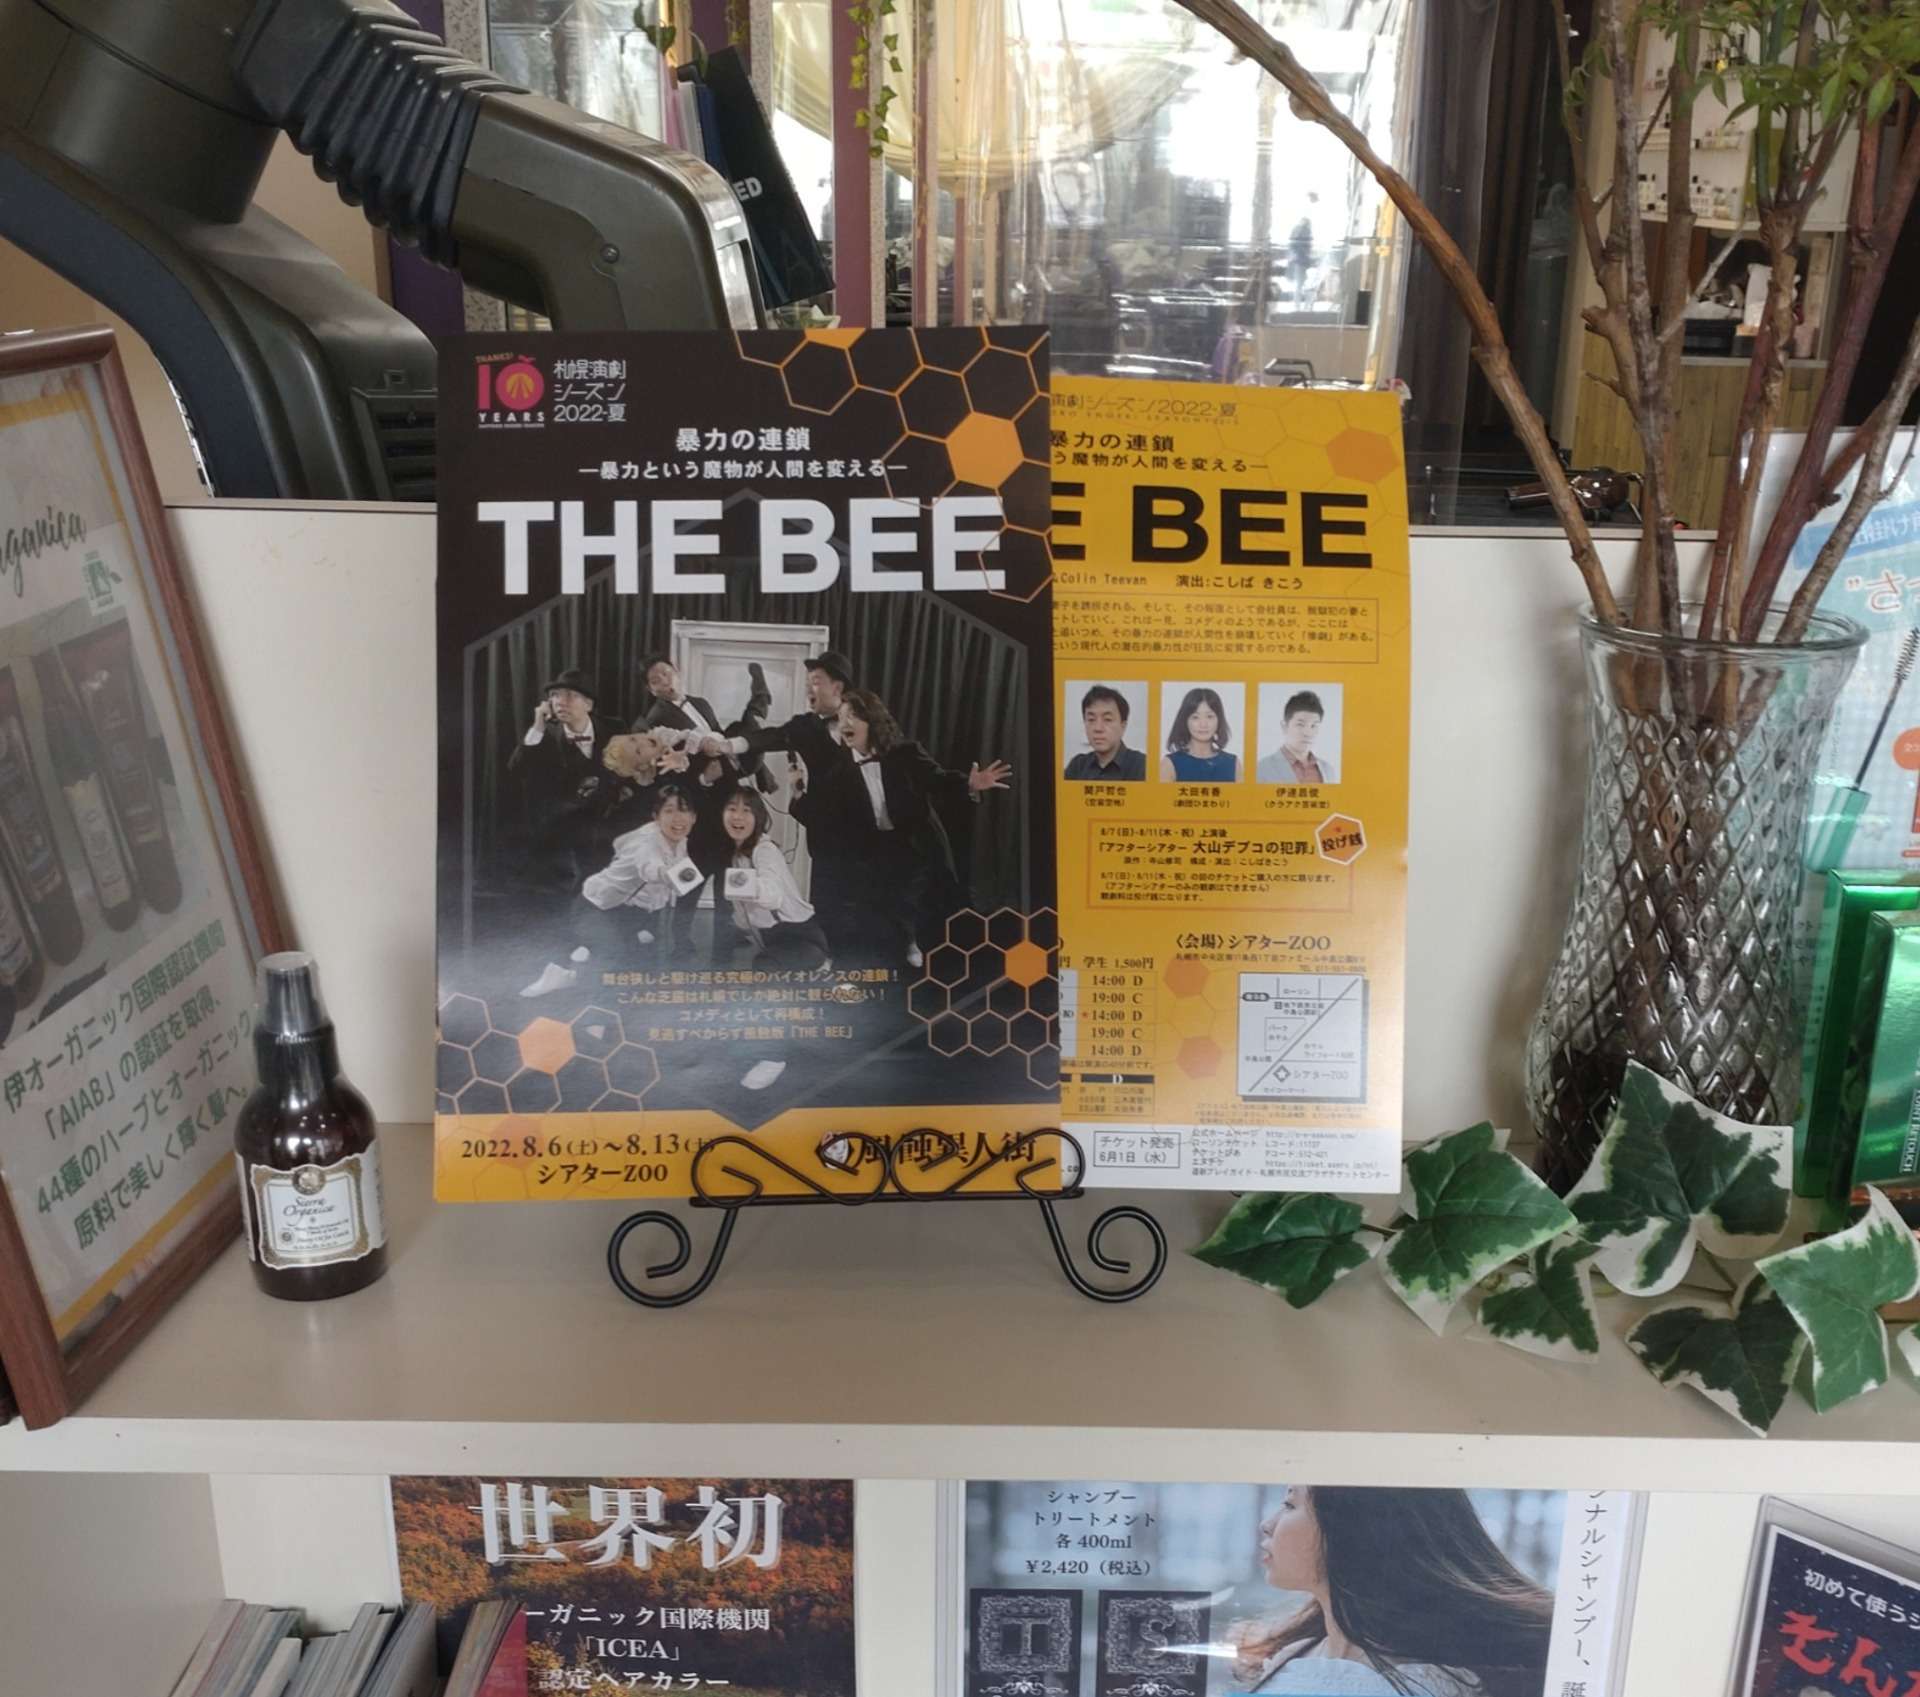 劇団風蝕異人街「THE BEE」のチラシを設置しています☆